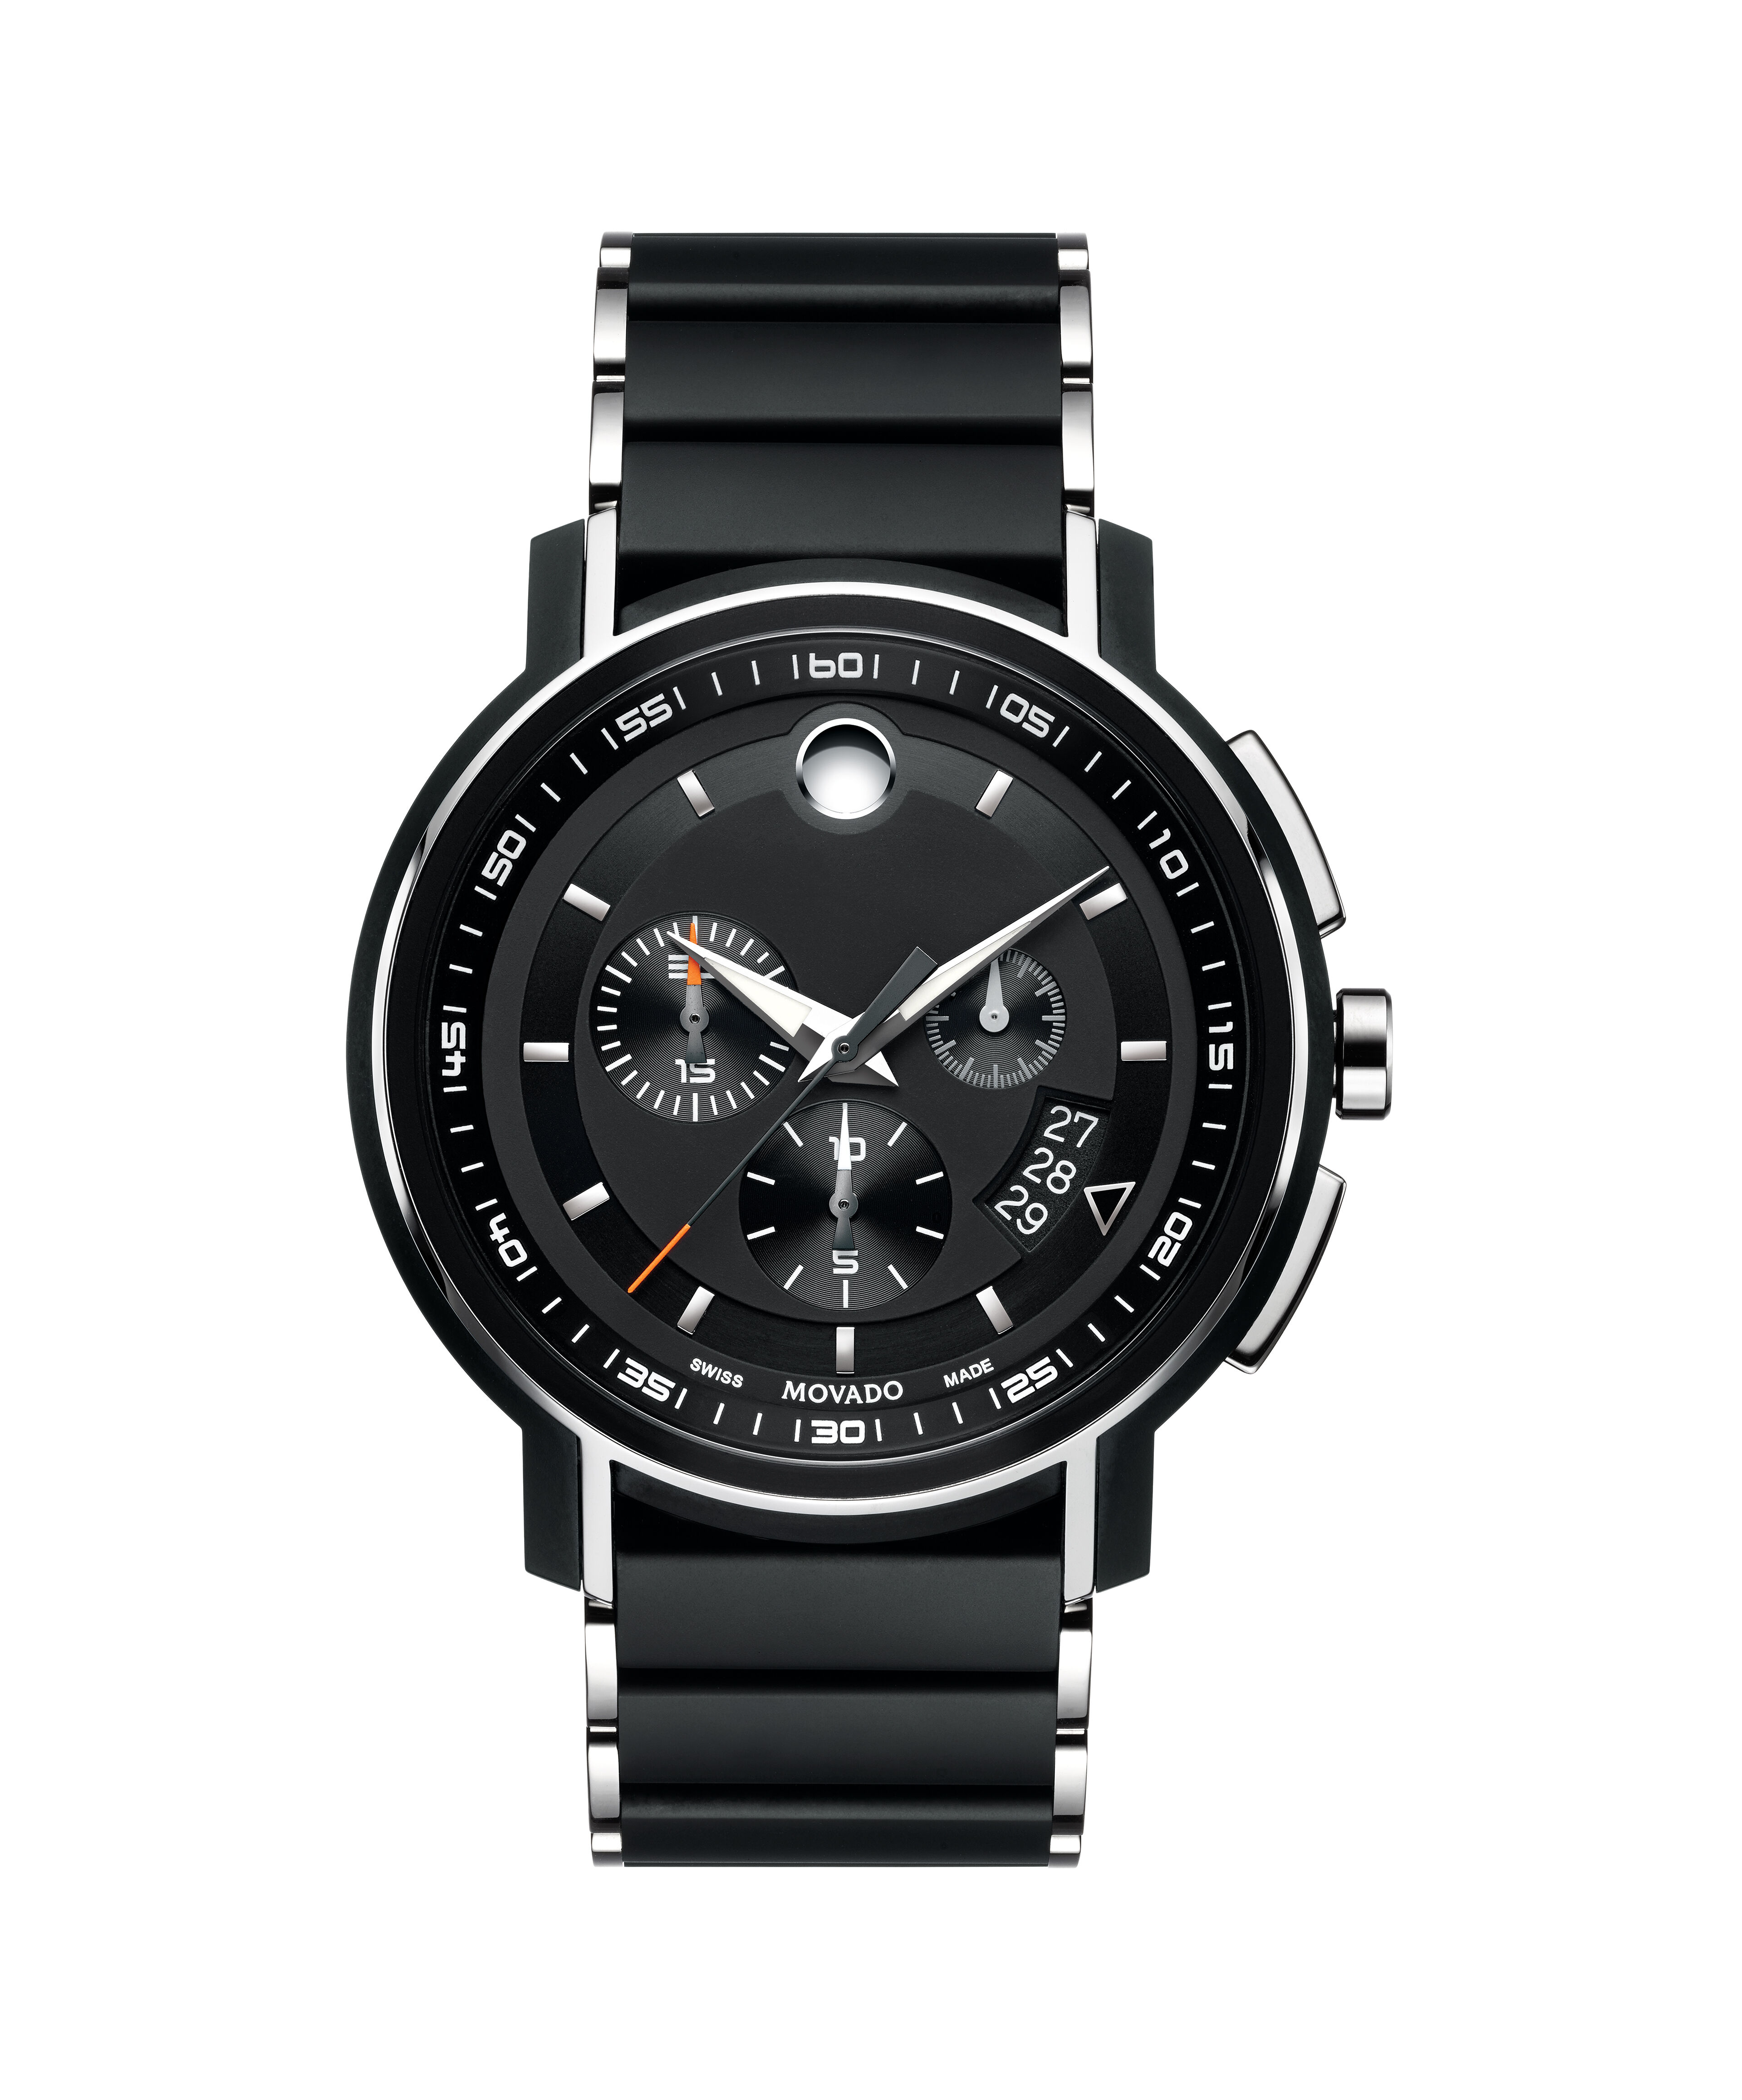 Watches Replica Amazon